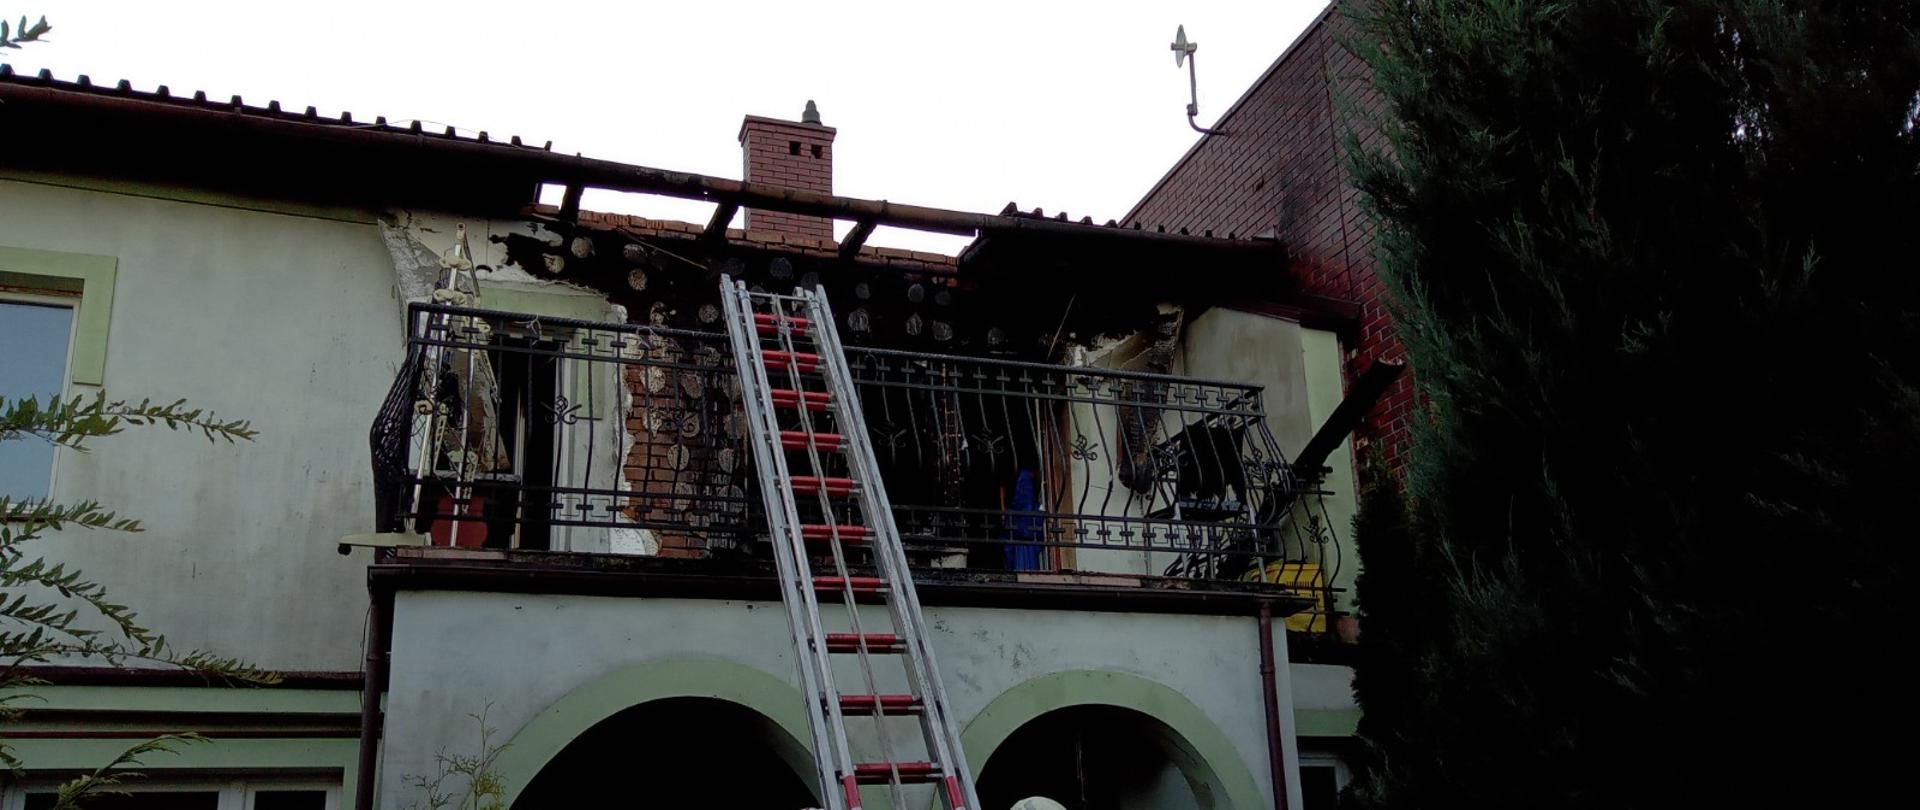 Zdjęcie przedstawia budynek, w którym na pierwszej kondygnacji doszło do pożaru. Widoczna spalona elewacja oraz uszkodzenie dachu. Poniżej oparta o balustradę balkonu znajduje się drabina wysuwana oraz trzech strażaków.